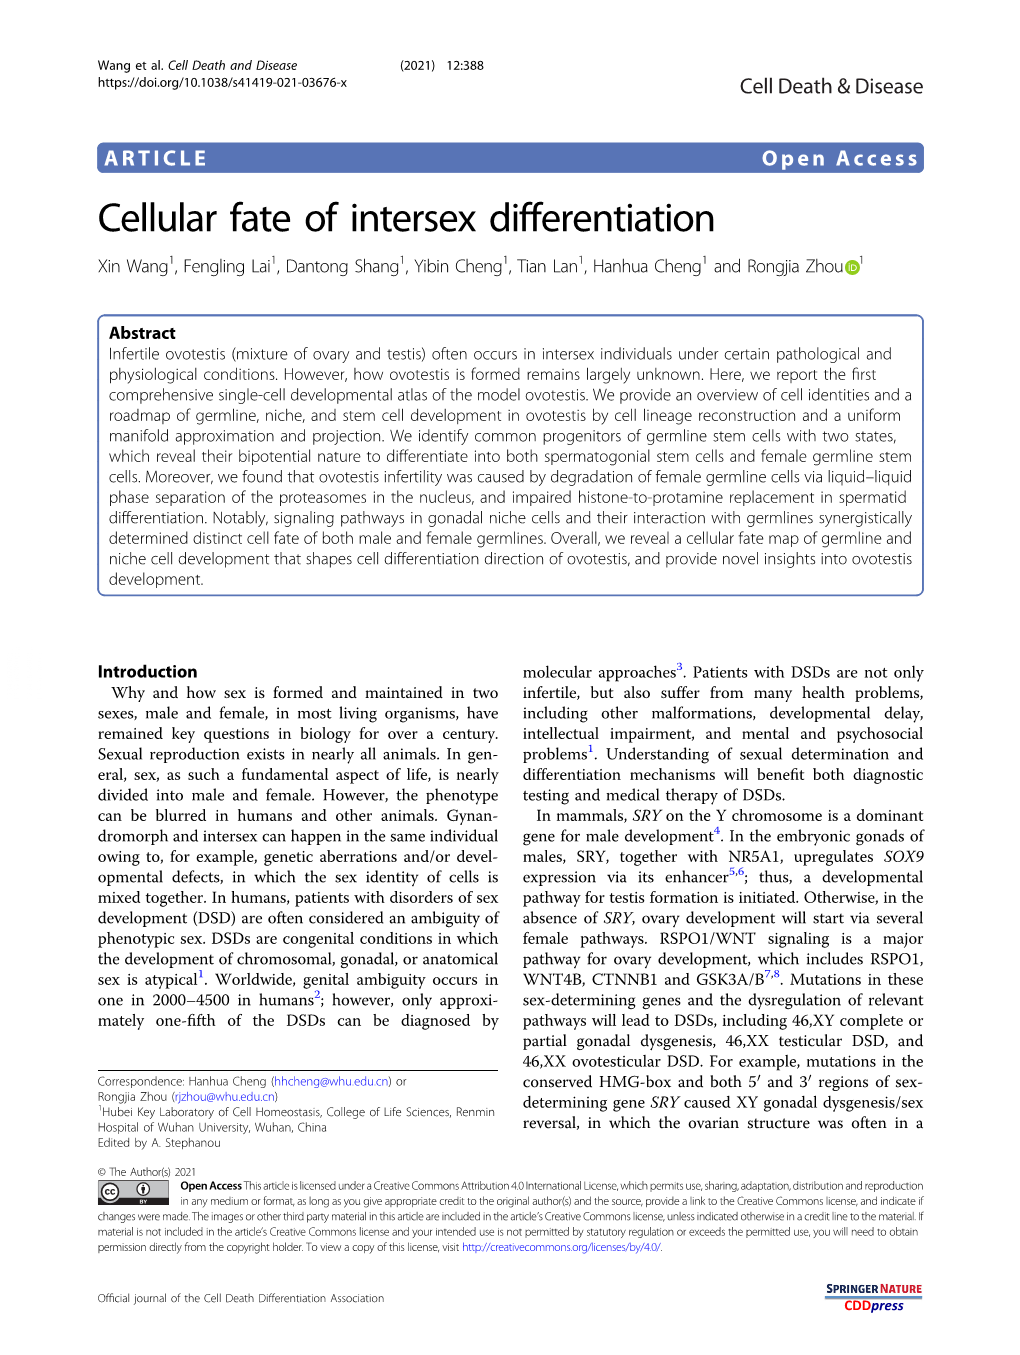 Cellular Fate of Intersex Differentiation Xin Wang1, Fengling Lai1,Dantongshang1, Yibin Cheng1,Tianlan1, Hanhua Cheng1 and Rongjia Zhou 1